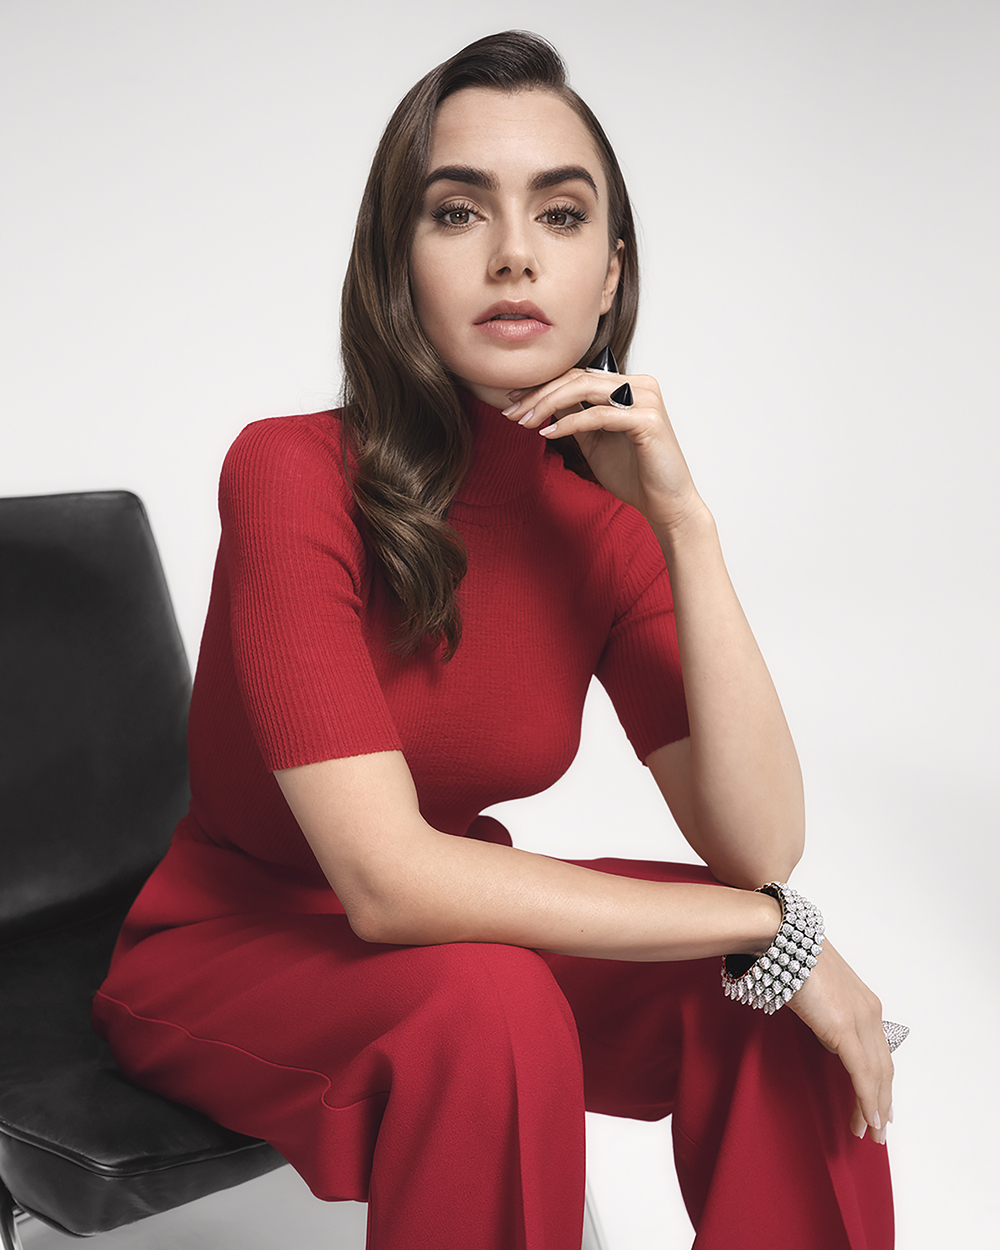 Lily Collin trở thành gương mặt đại diện cho dòng túi xách và BST trang sức kim cương mới của Cartier.